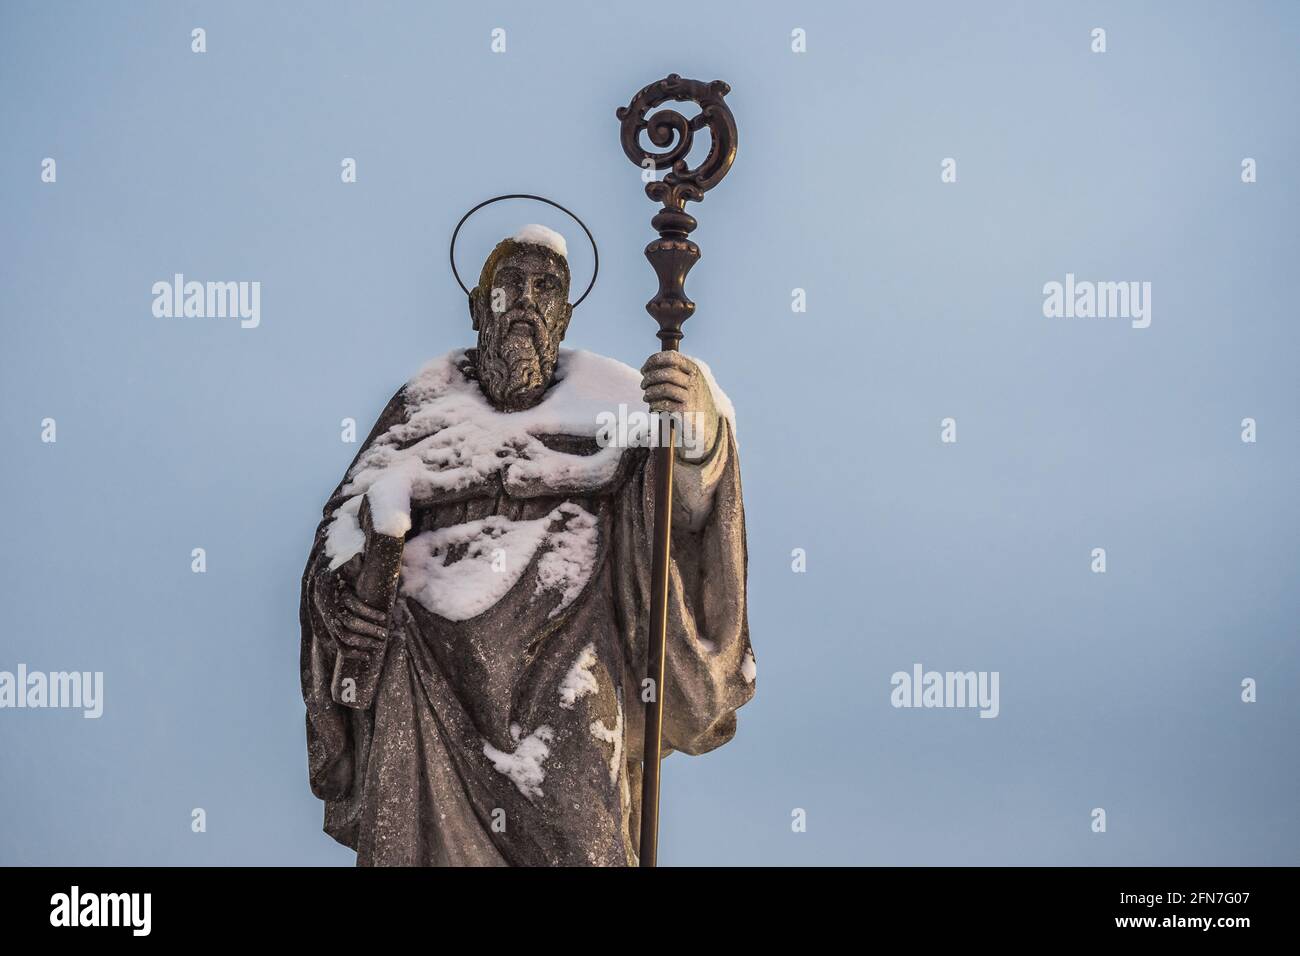 Saint Benoît de Nursia Statue sur Sonntagberg dans le Mostviertel ou must quartier de Basse-Autriche recouvert de neige. Reproduction d'une sculpture m Banque D'Images